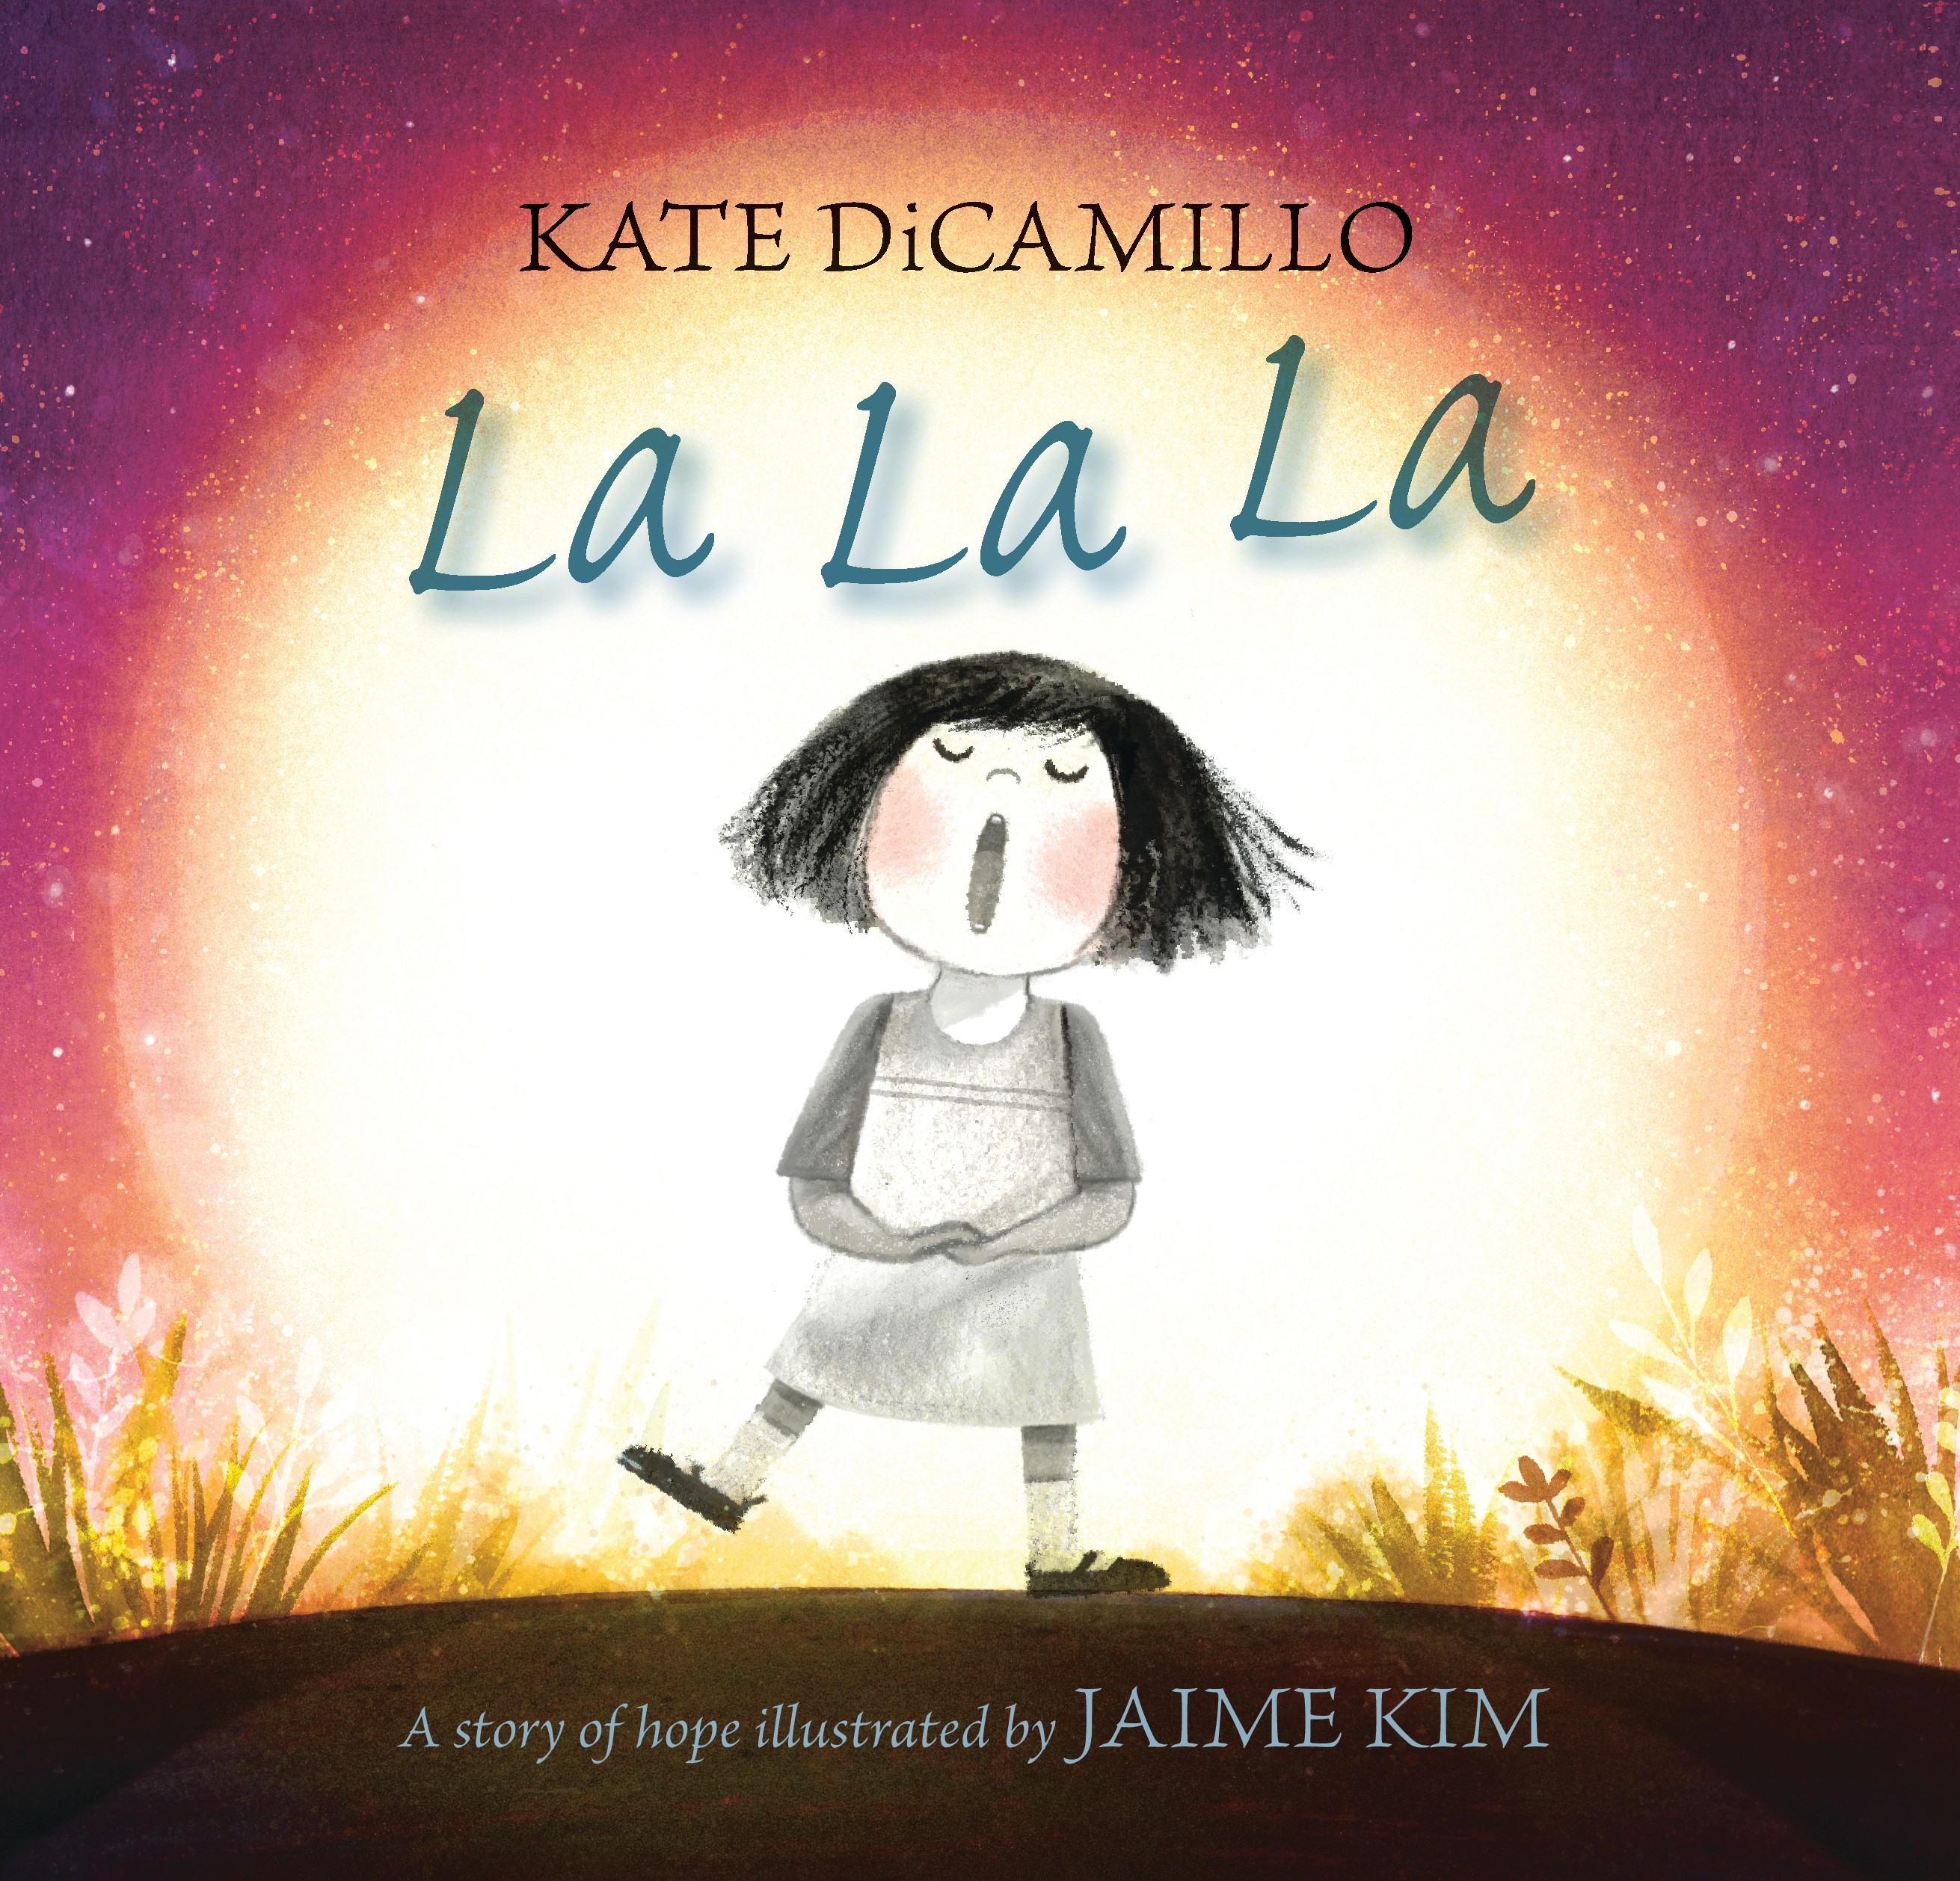 Book cover of La La La by Kate DiCamillo. Image includes a young dark haired girl singing "la la la."